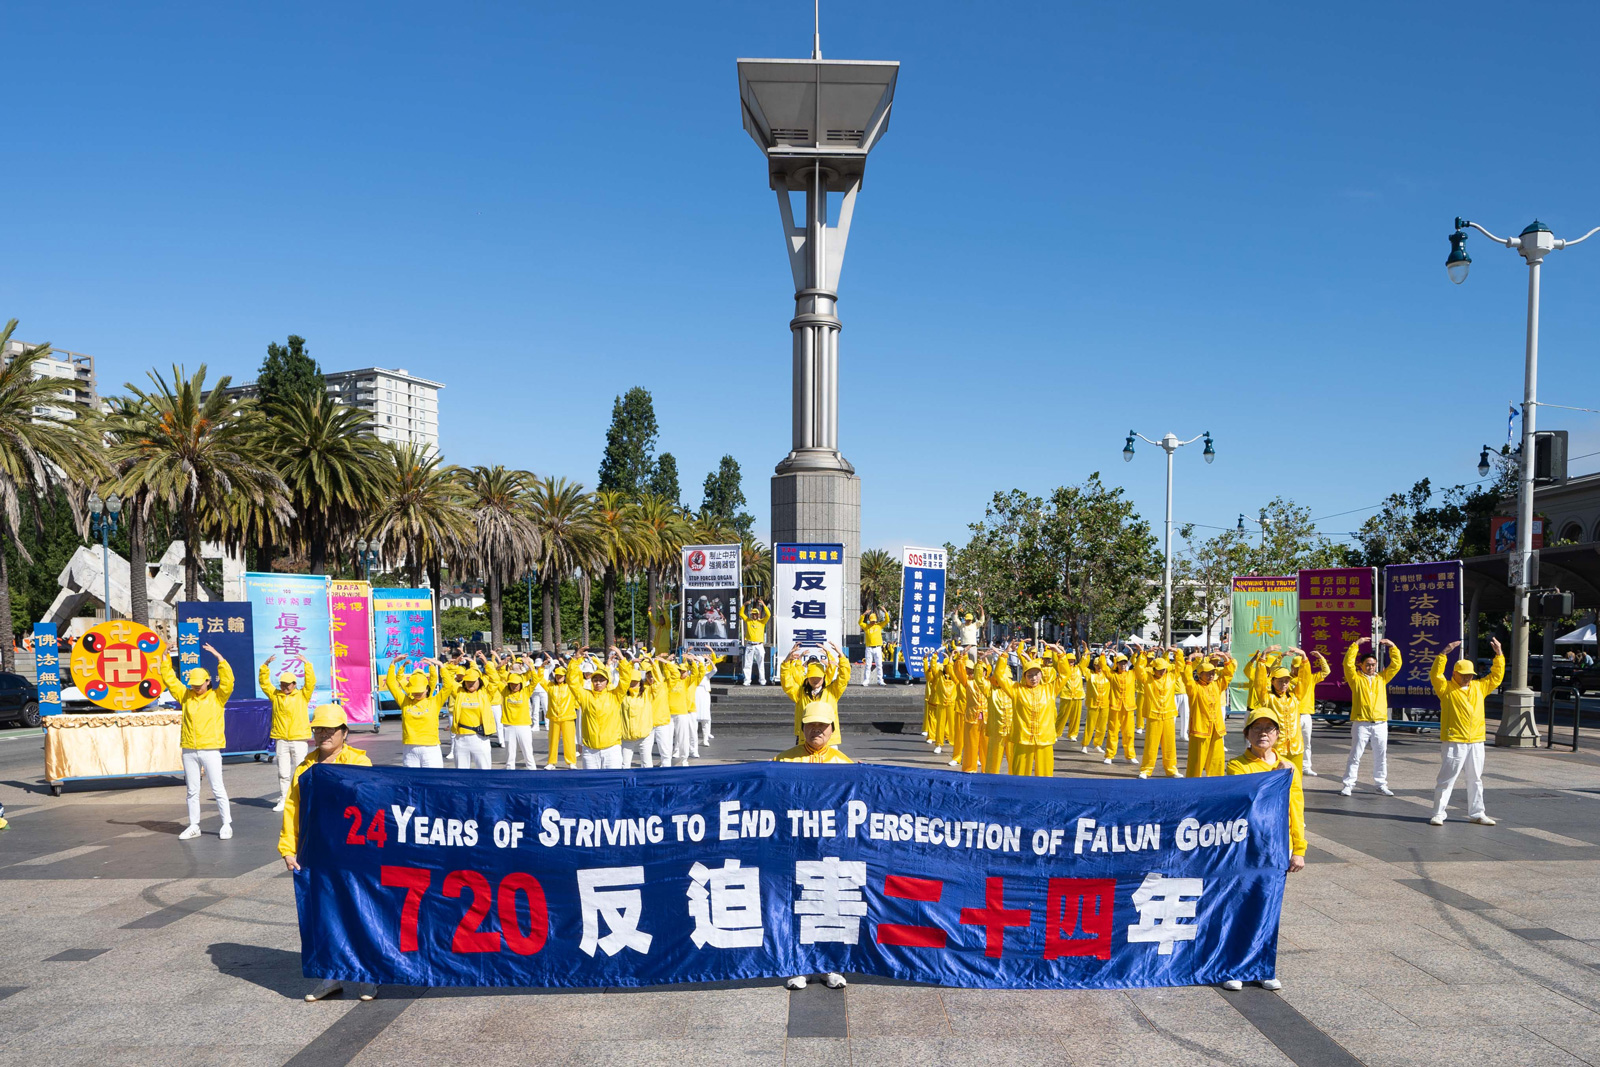 Image for article Californie, États-Unis : Lors des activités marquant les 24 ans de résistance des pratiquants à la persécution du Falun Dafa, des personnalités expriment leur soutien